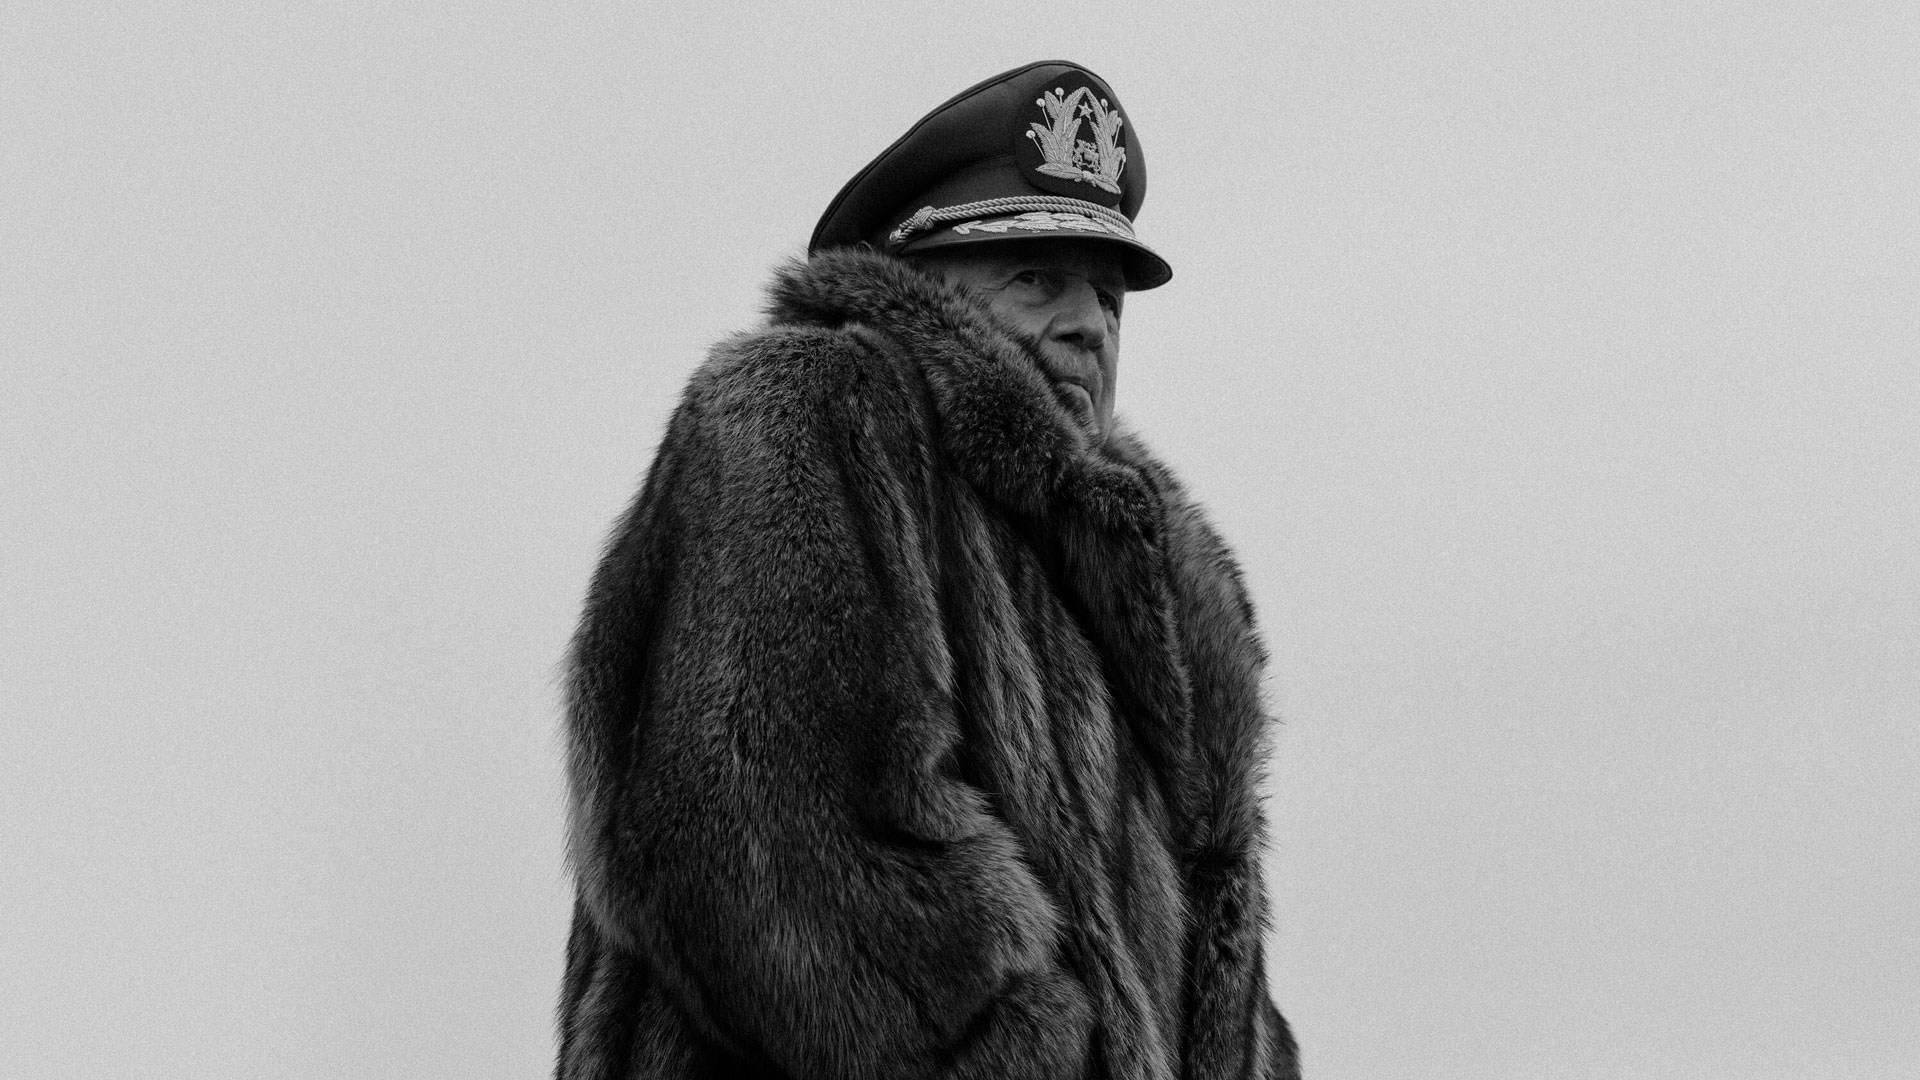 هایمه وادل با لباس گرم و کلاه نظامی در نقش آگوستو پینوشه در نمایی سیاه و سفید از فیلم کنت به کارگردانی پابلو لارائین